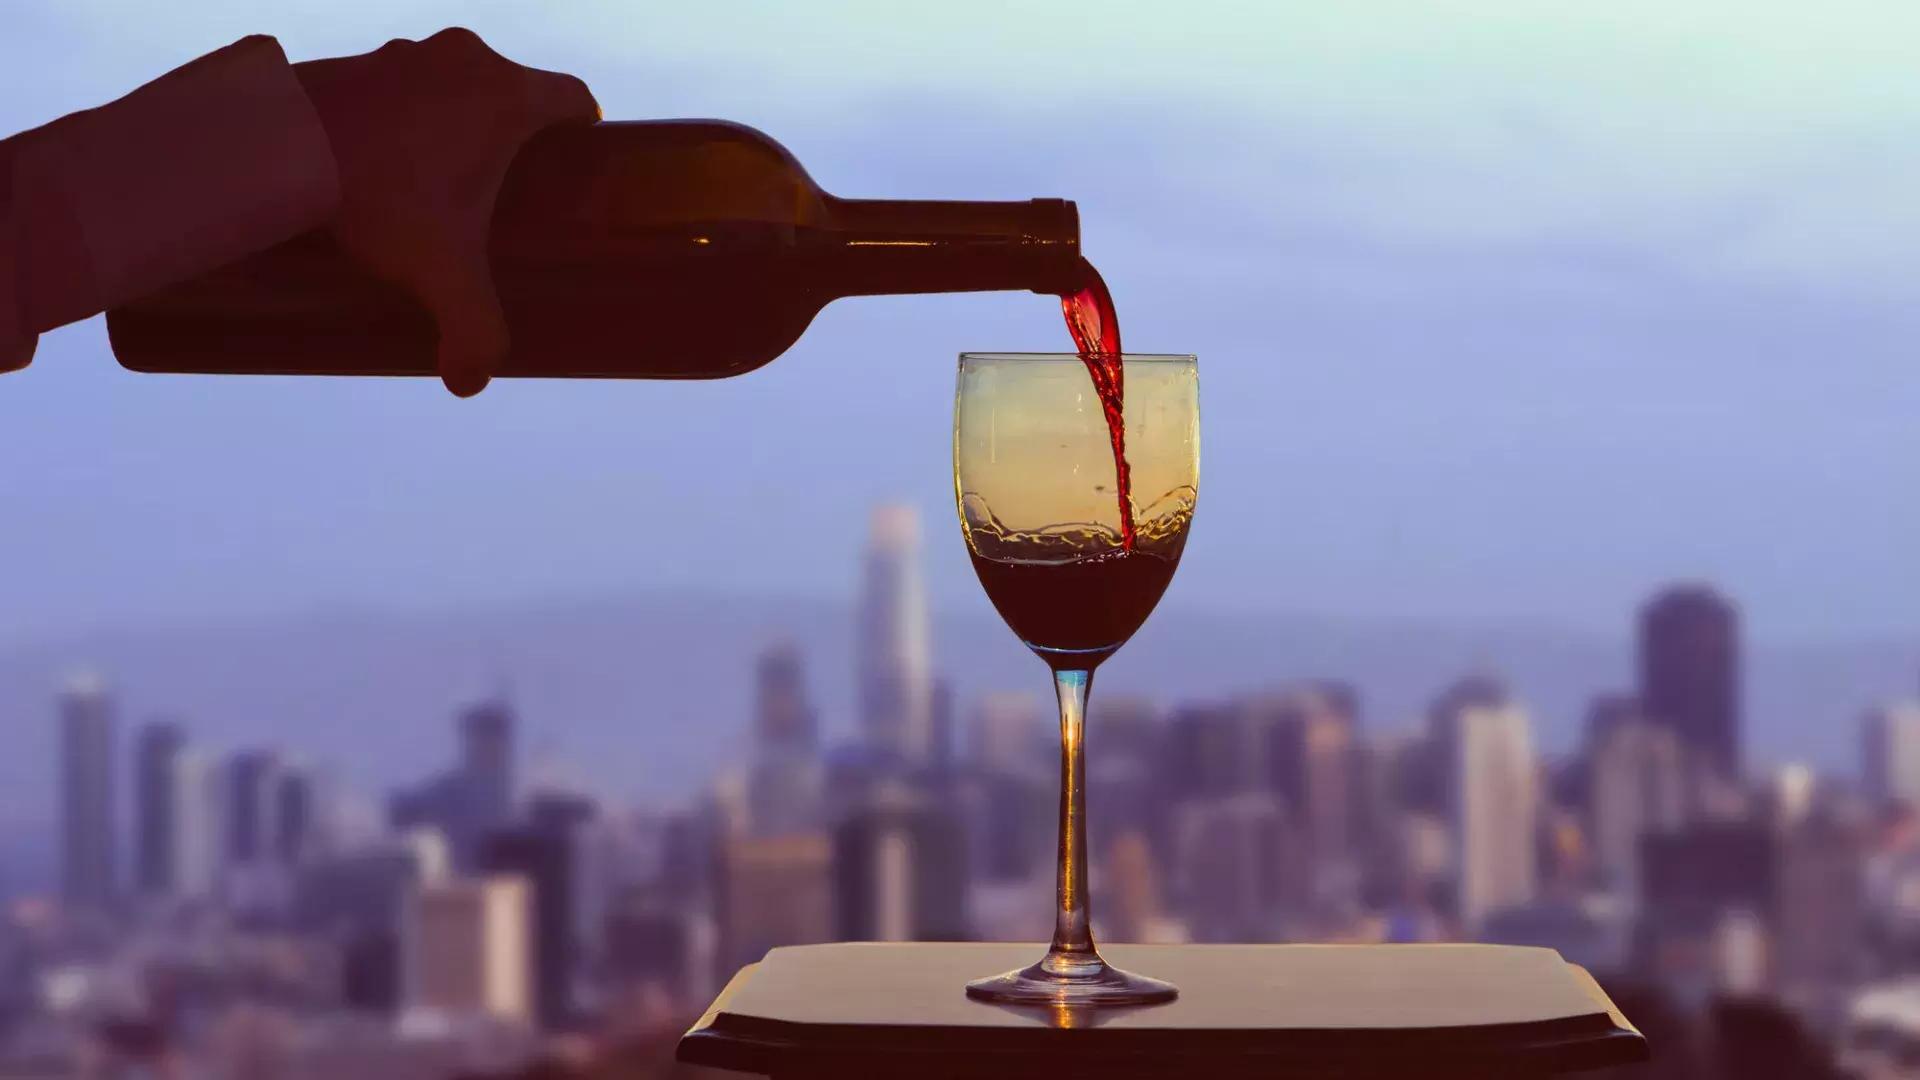 Ein Glas Rotwein wird eingeschenkt, während aus dem Fenster die Skyline von San Francisco sichtbar ist.